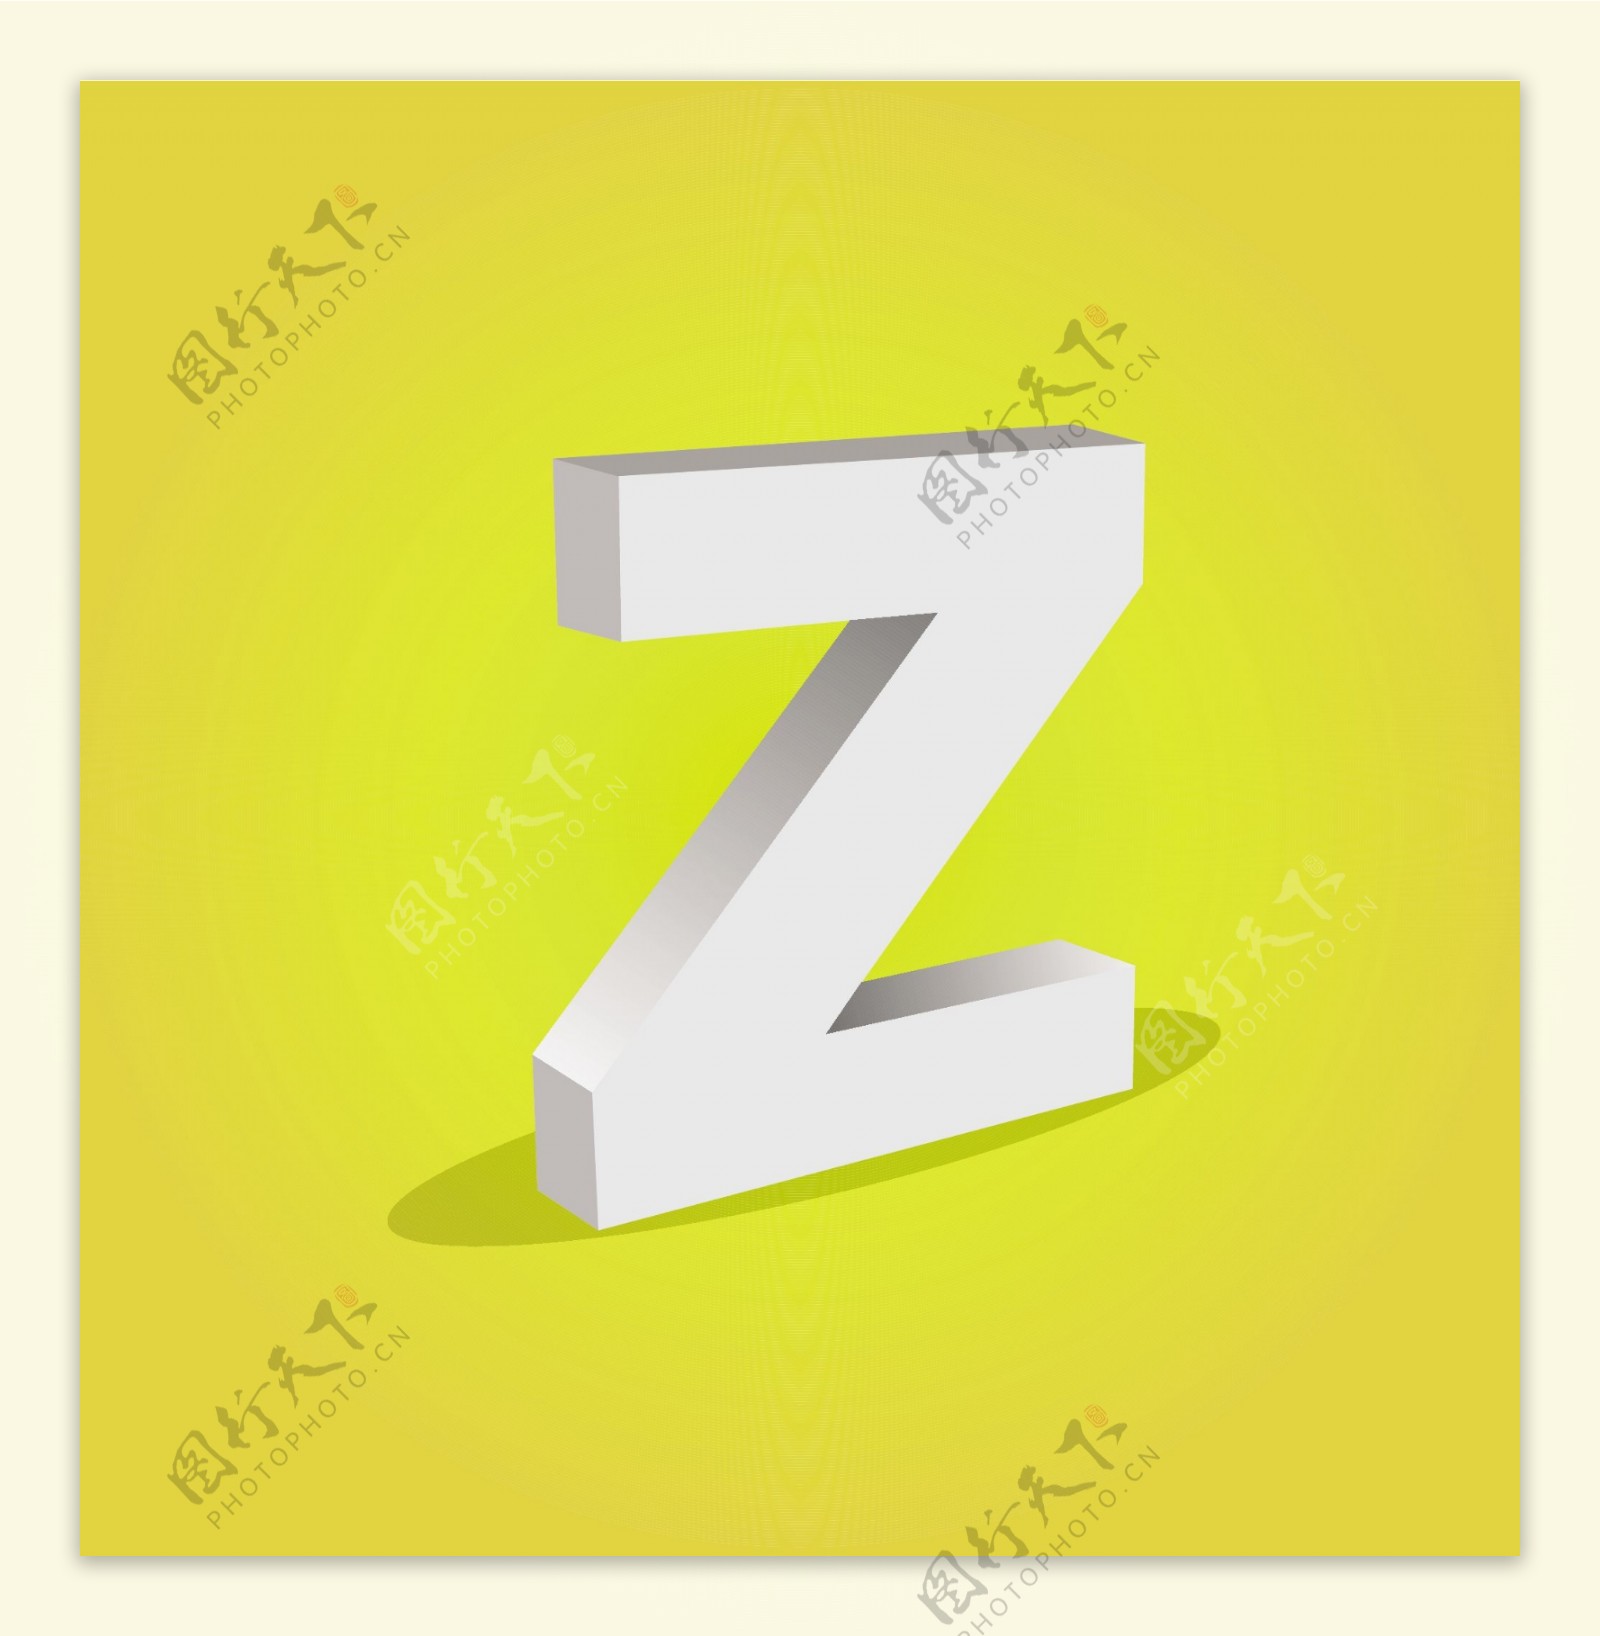 三维矢量字母Z文本